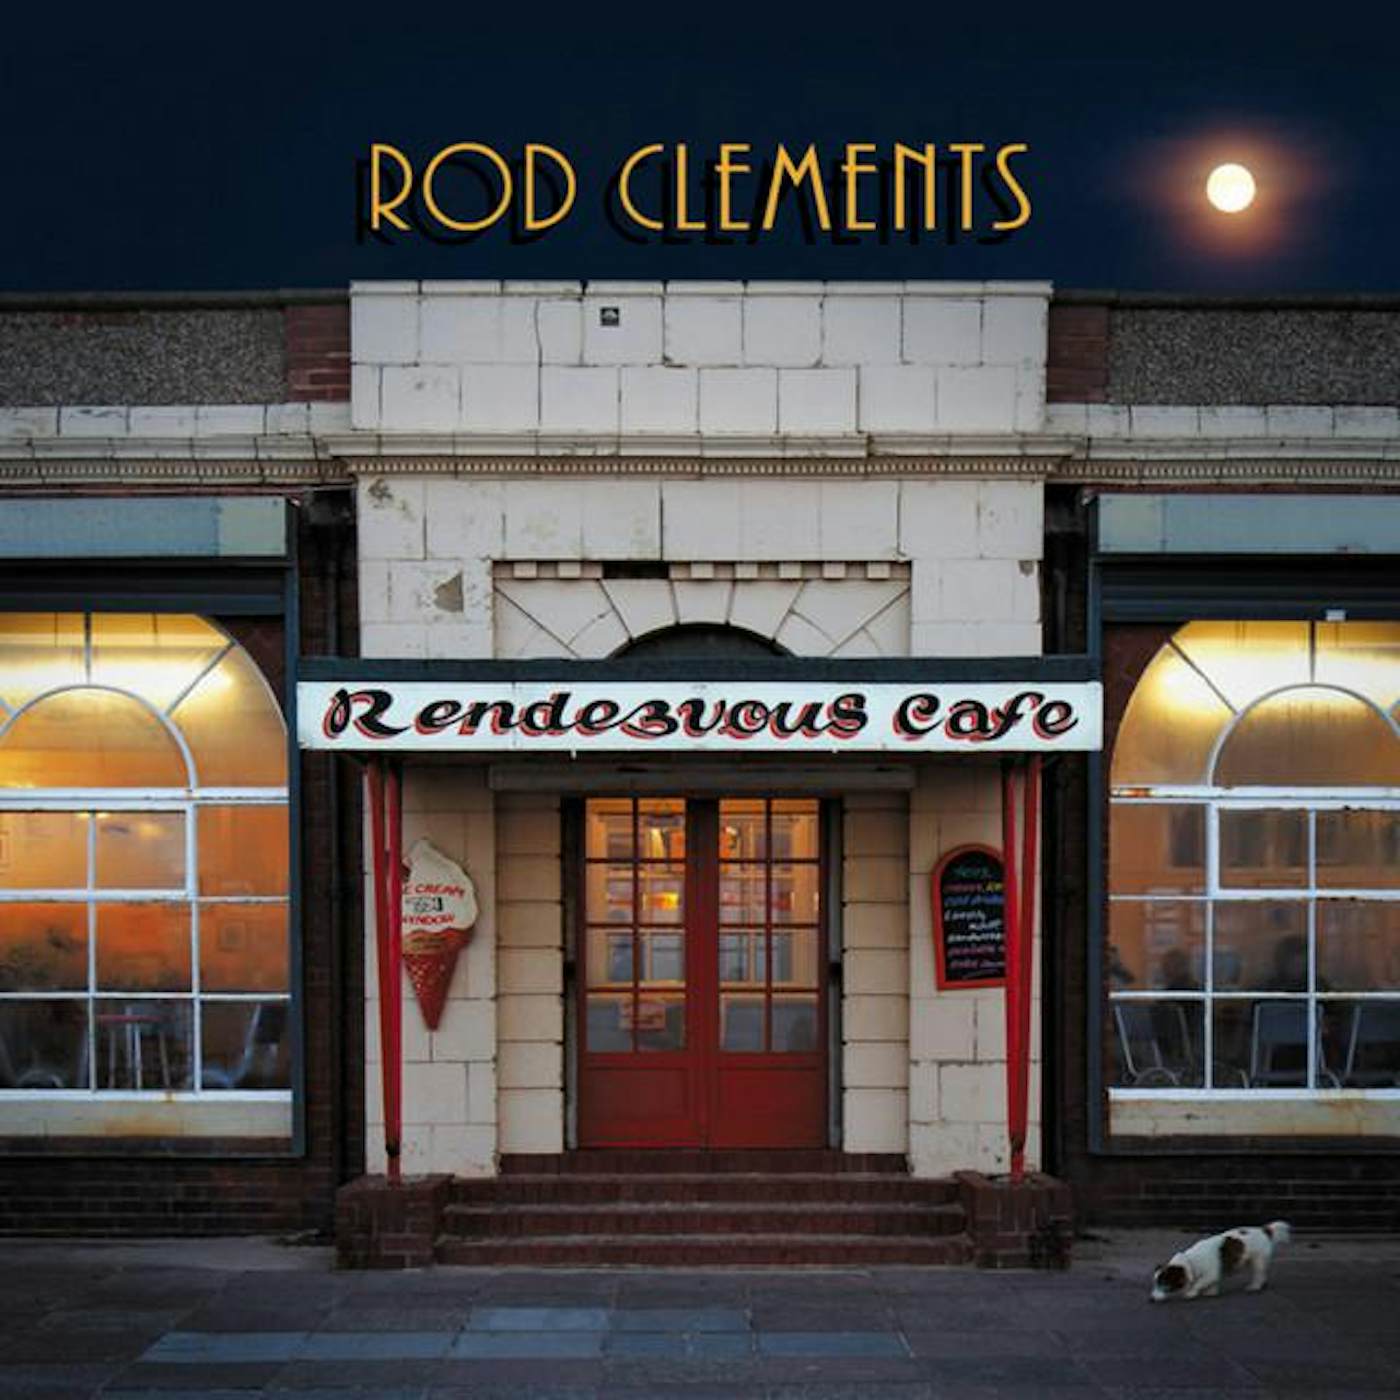 Rod clements